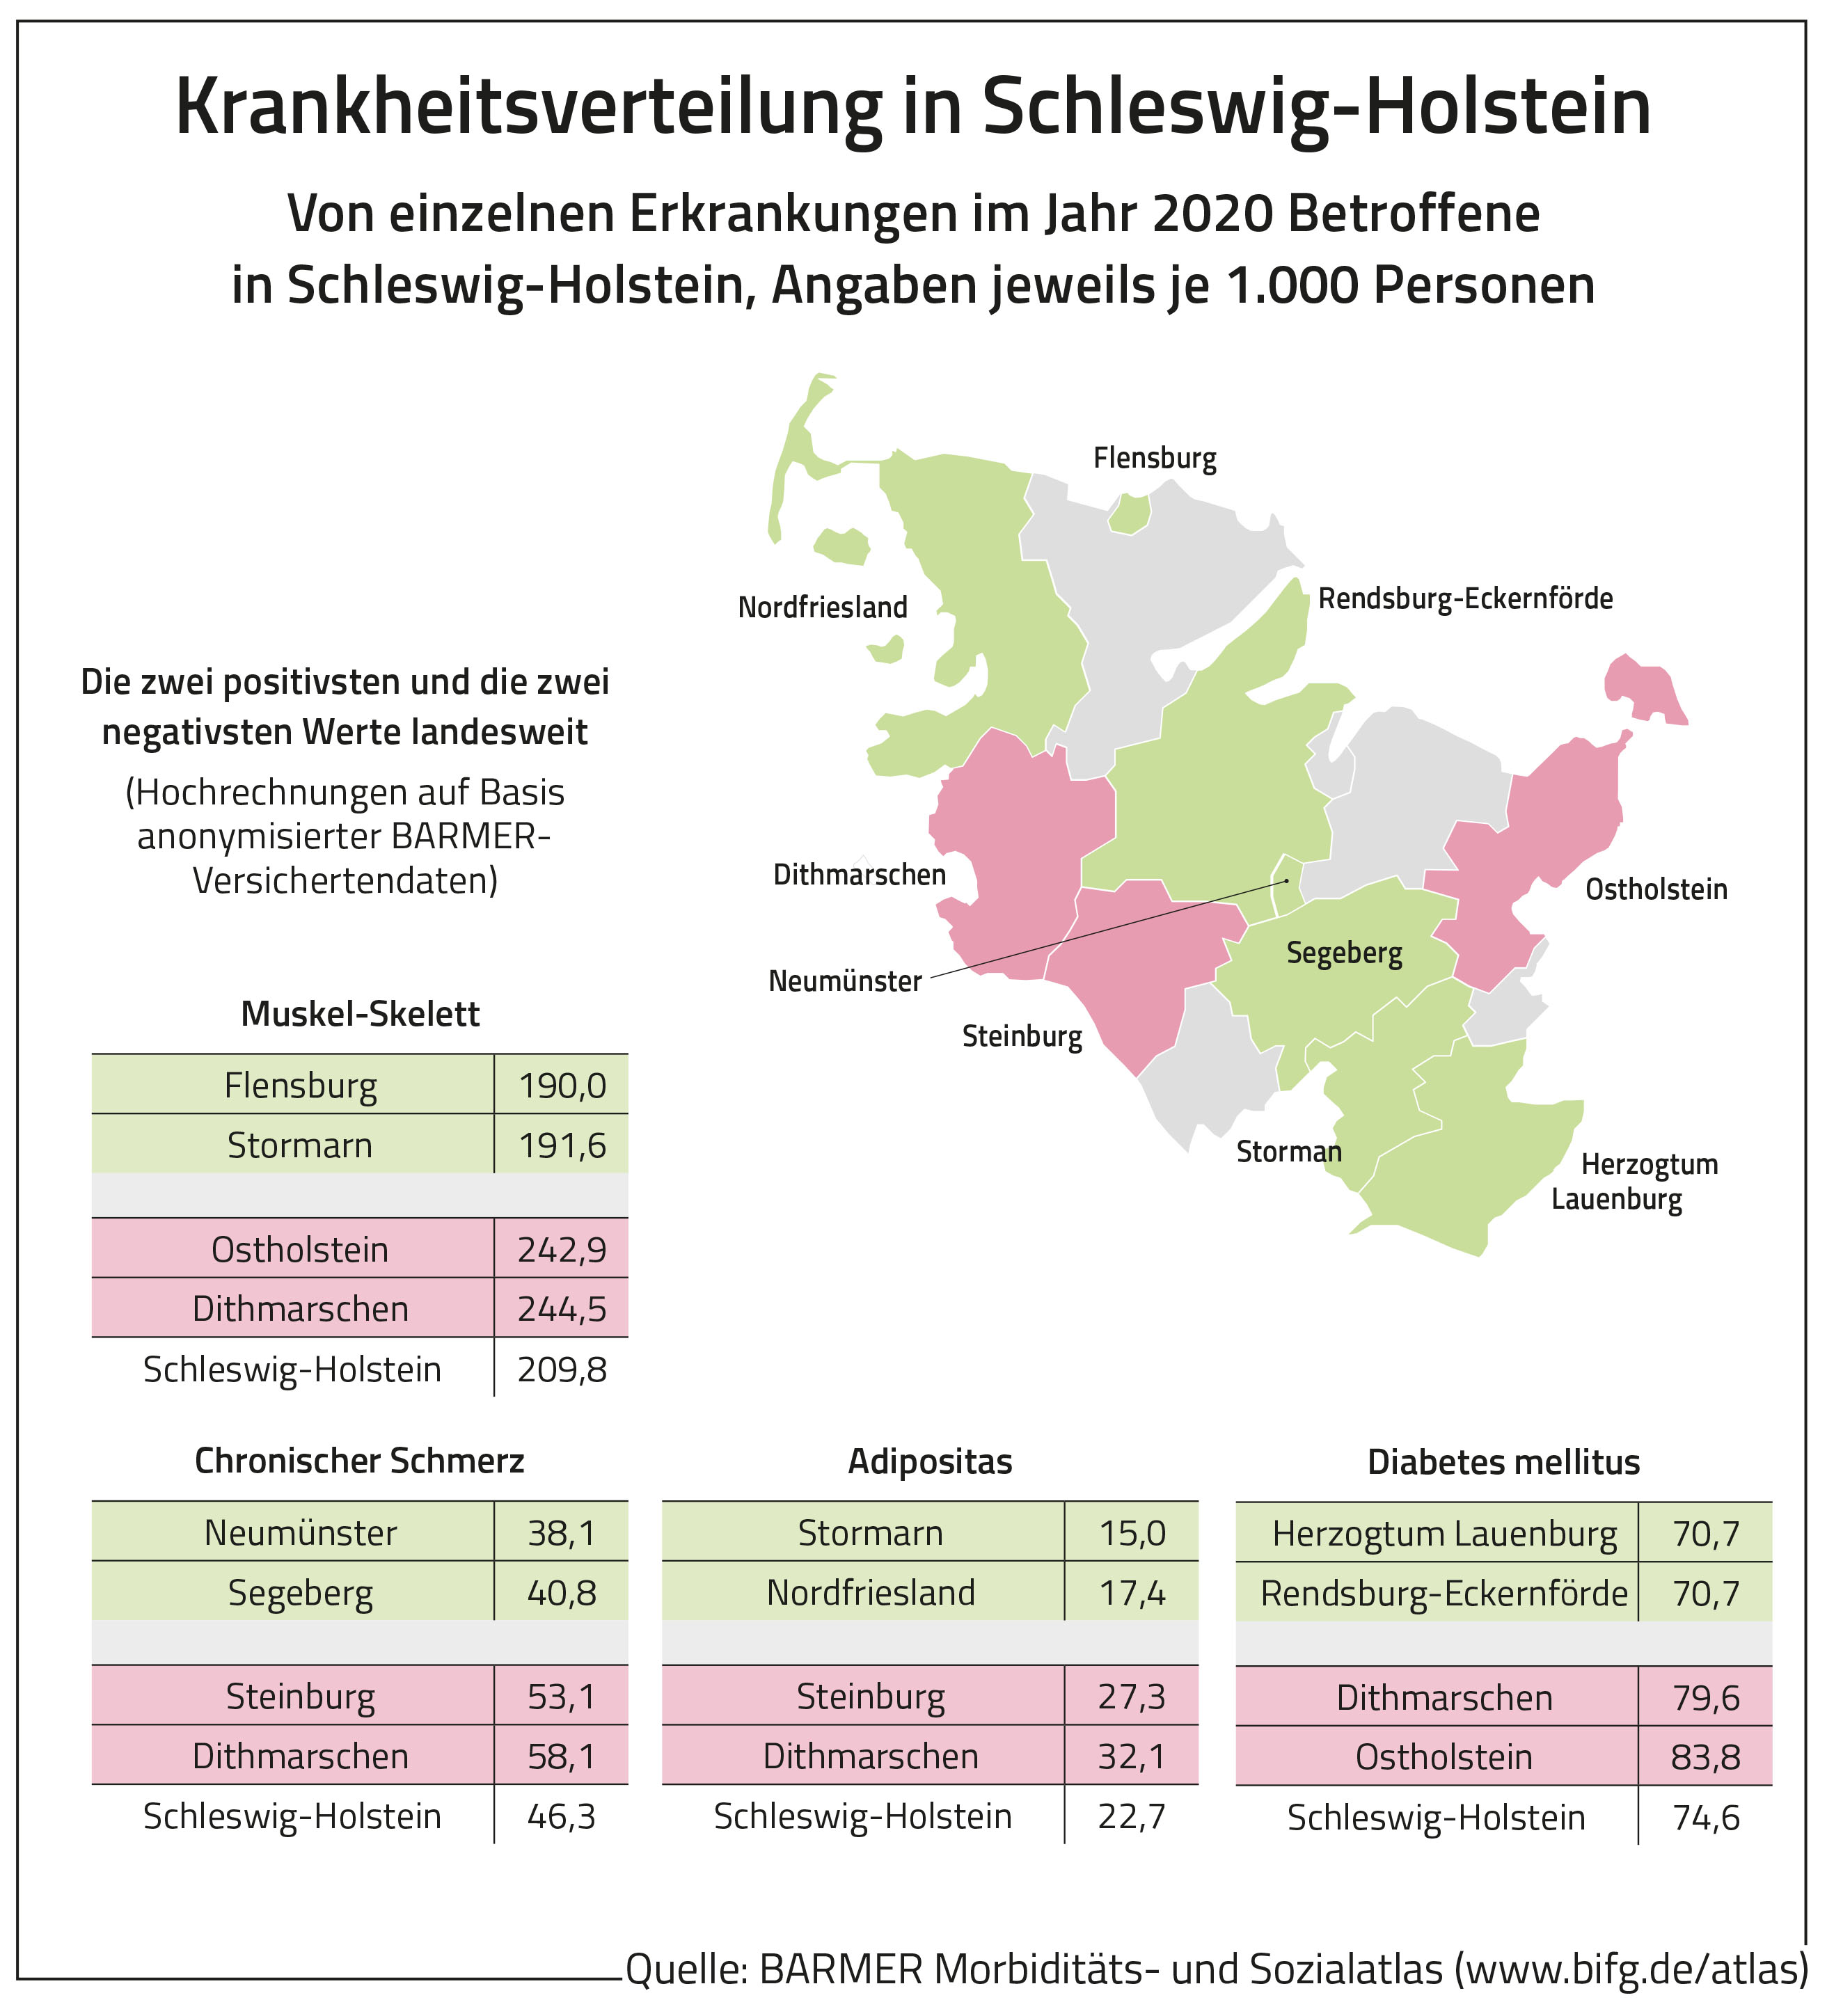 Die Grafik zeigt die von einzelnen Erkrankungen im Jahr 2020 Betroffenen in Schleswig-Holstein